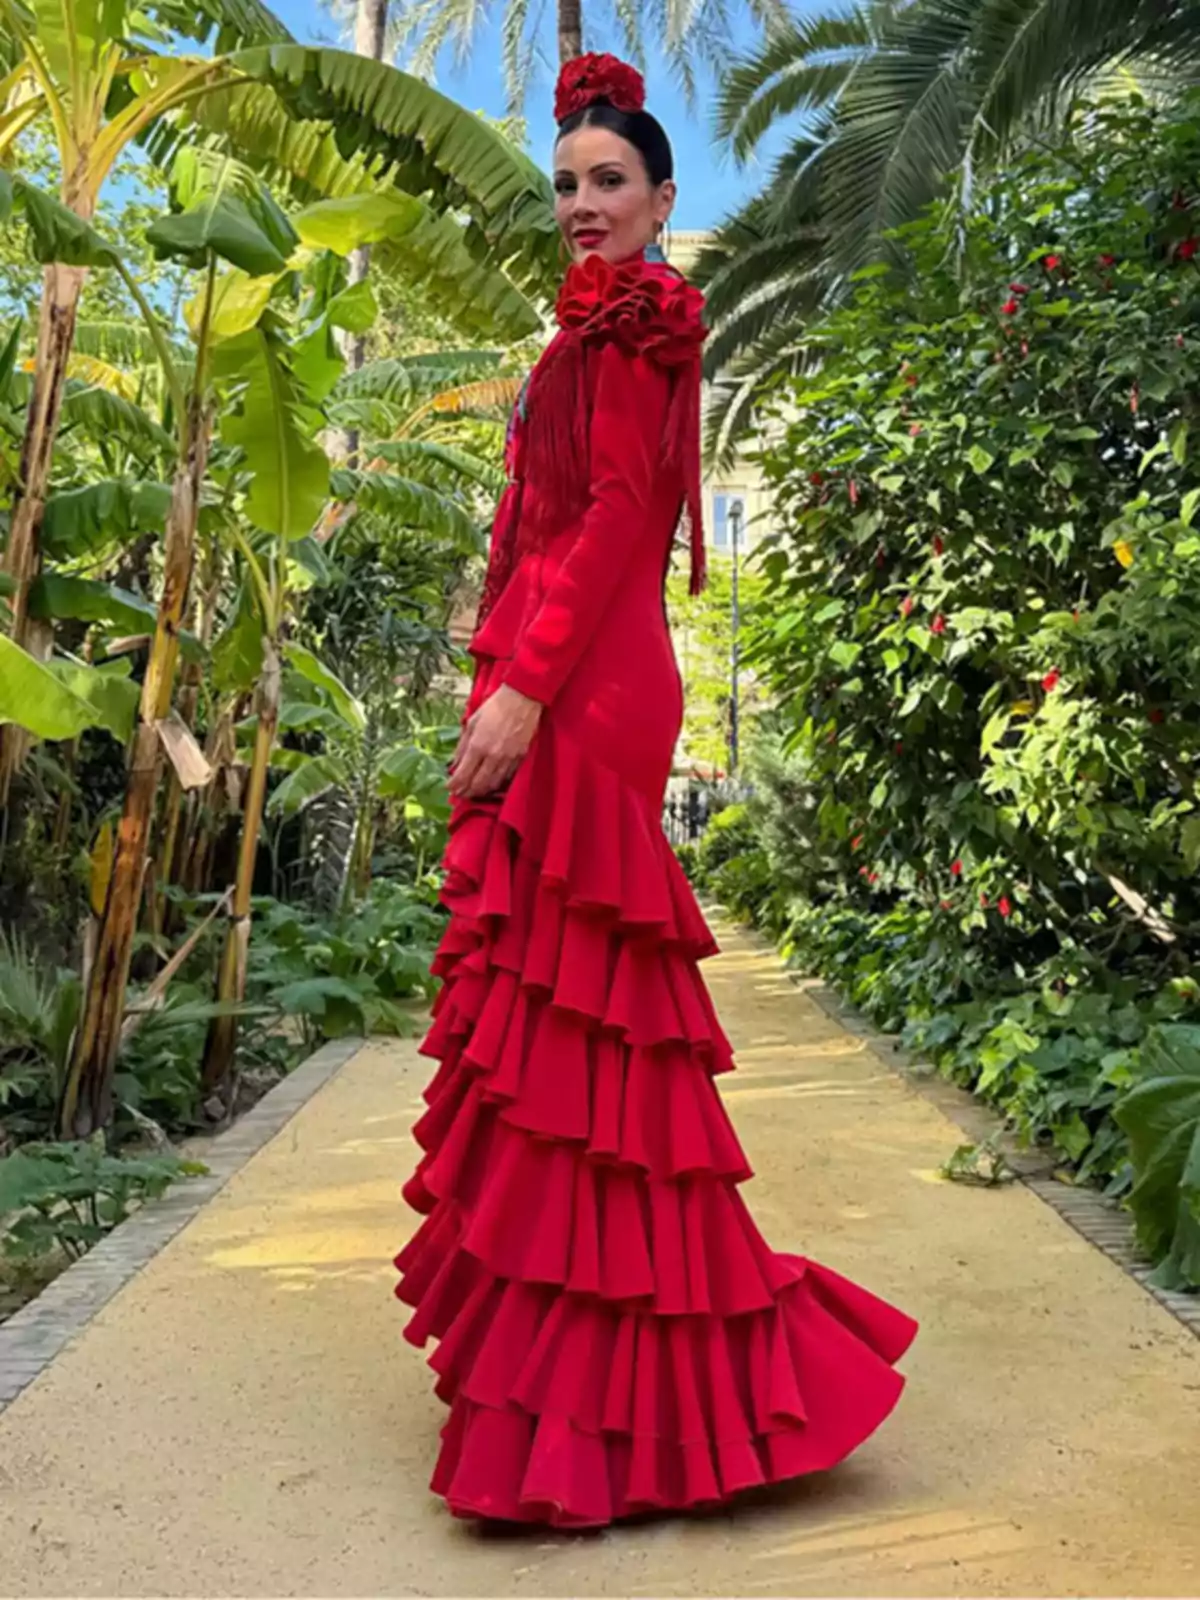 Una mujer con un vestido rojo de volantes posa en un jardín tropical.